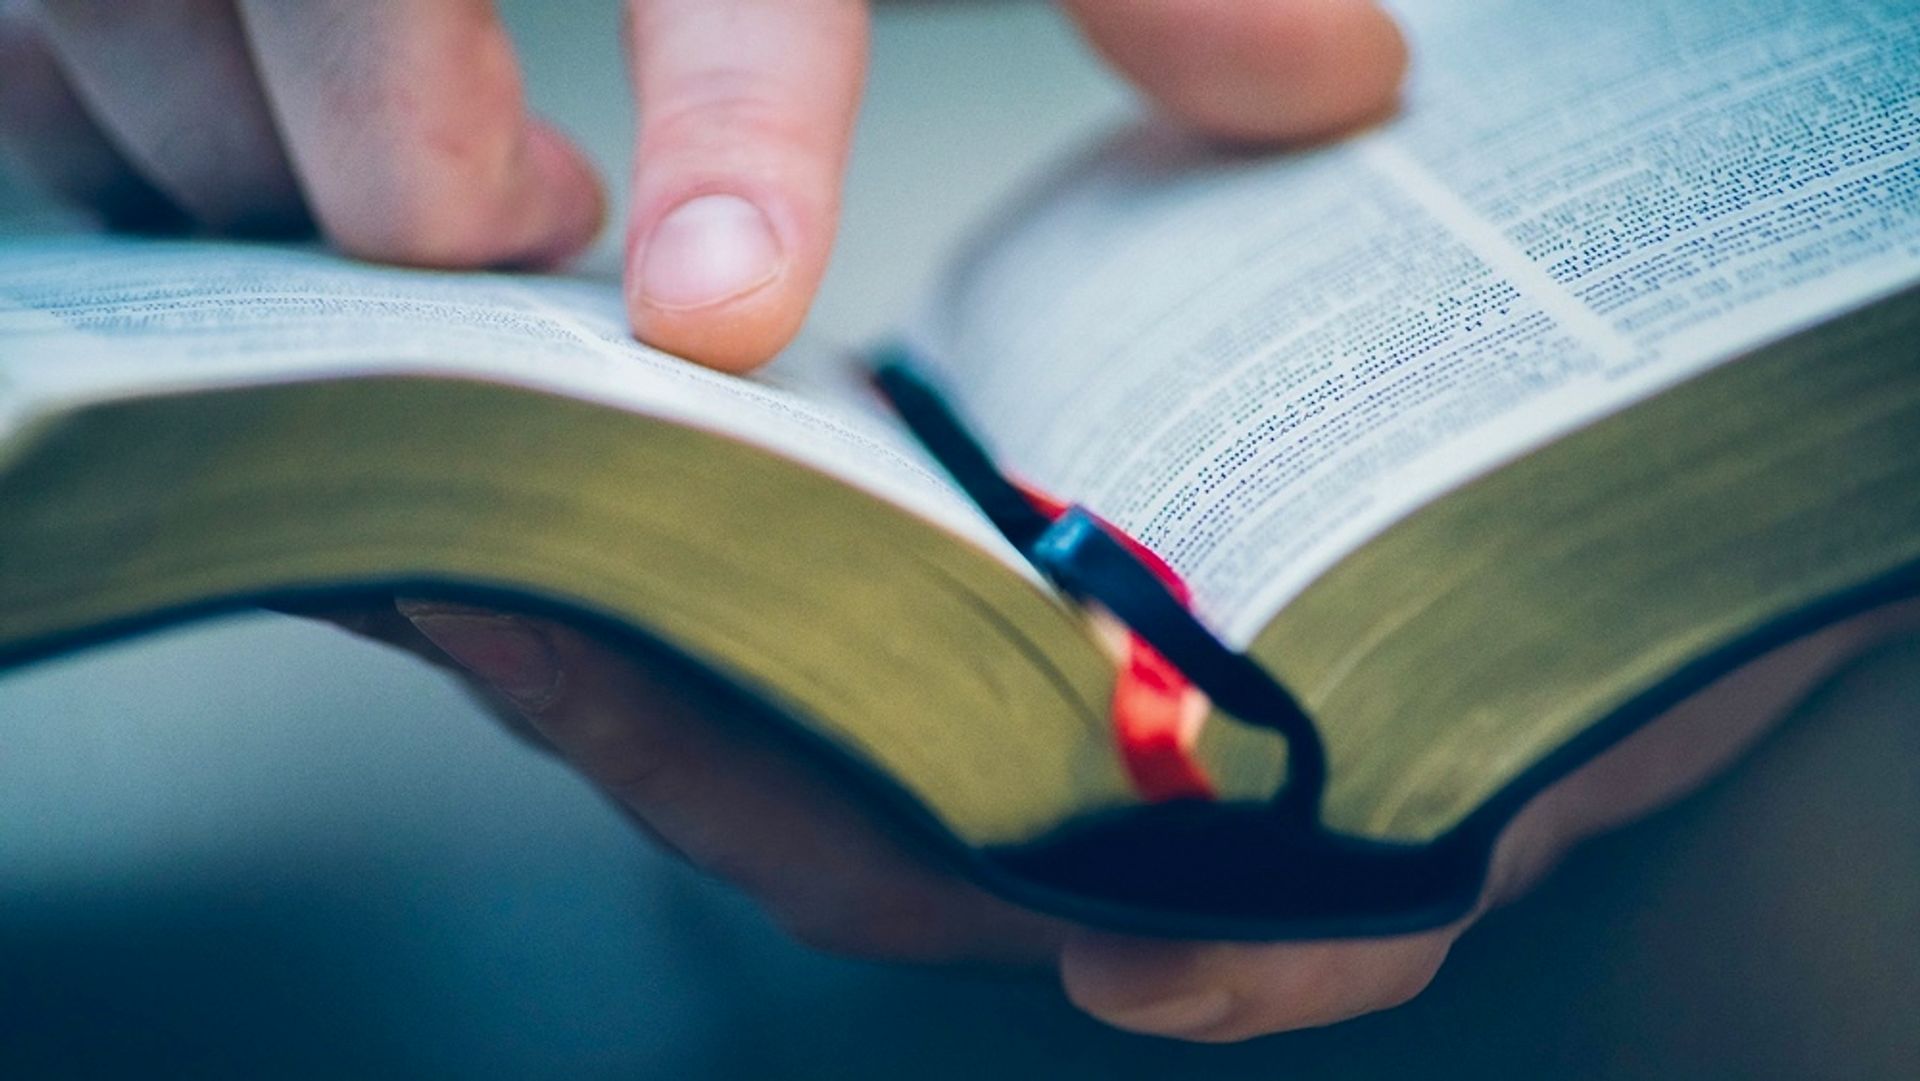 Lees ook: 5 tips om de Bijbel met een frisse blik te lezen